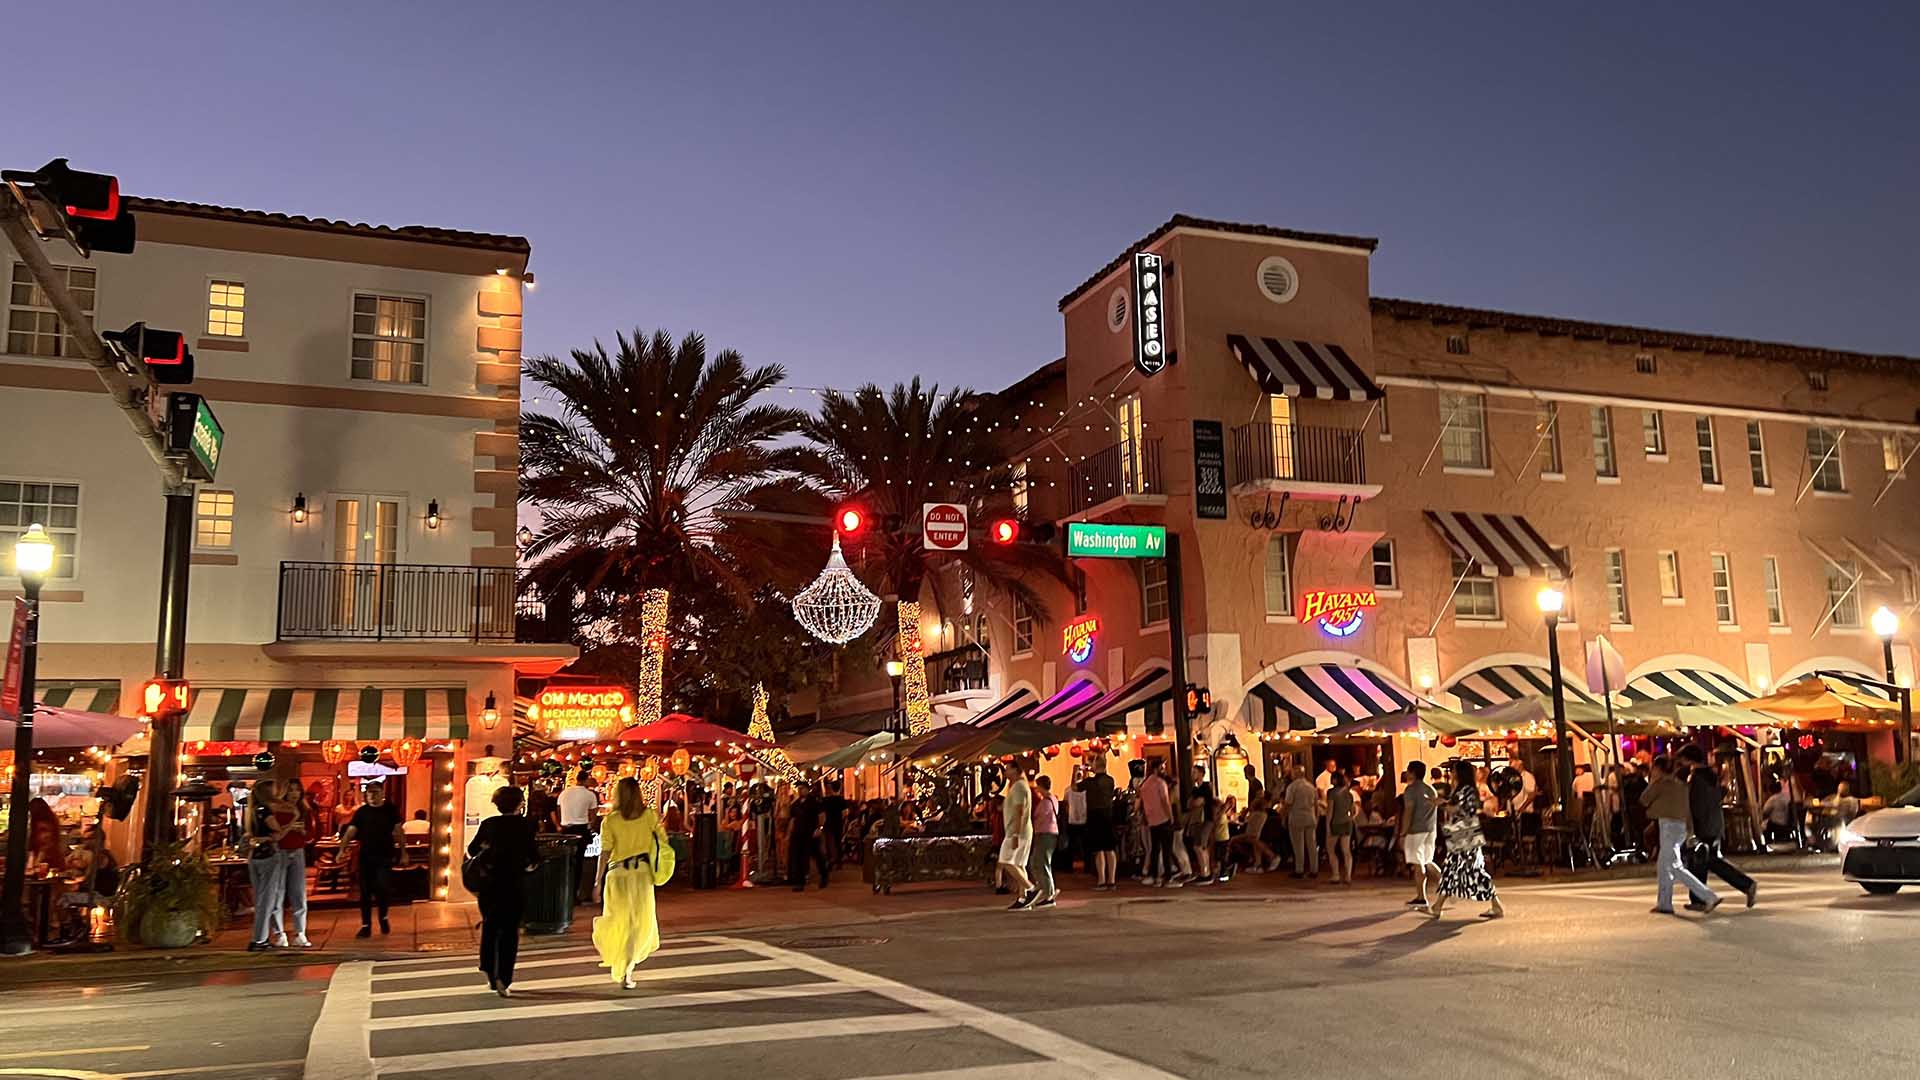 Española Way es una calle peatonal ubicada en el barrio de South Beach de Miami Beach, Florida. Fue construida en los años 20 y es conocida por su arquitectura Art Deco, su vibrante escena de restaurantes y tiendas, y su ambiente nocturno. Española Way es una parada popular para los turistas que buscan una experiencia auténtica de la vida en Miami Beach. Foto: Opy Morales